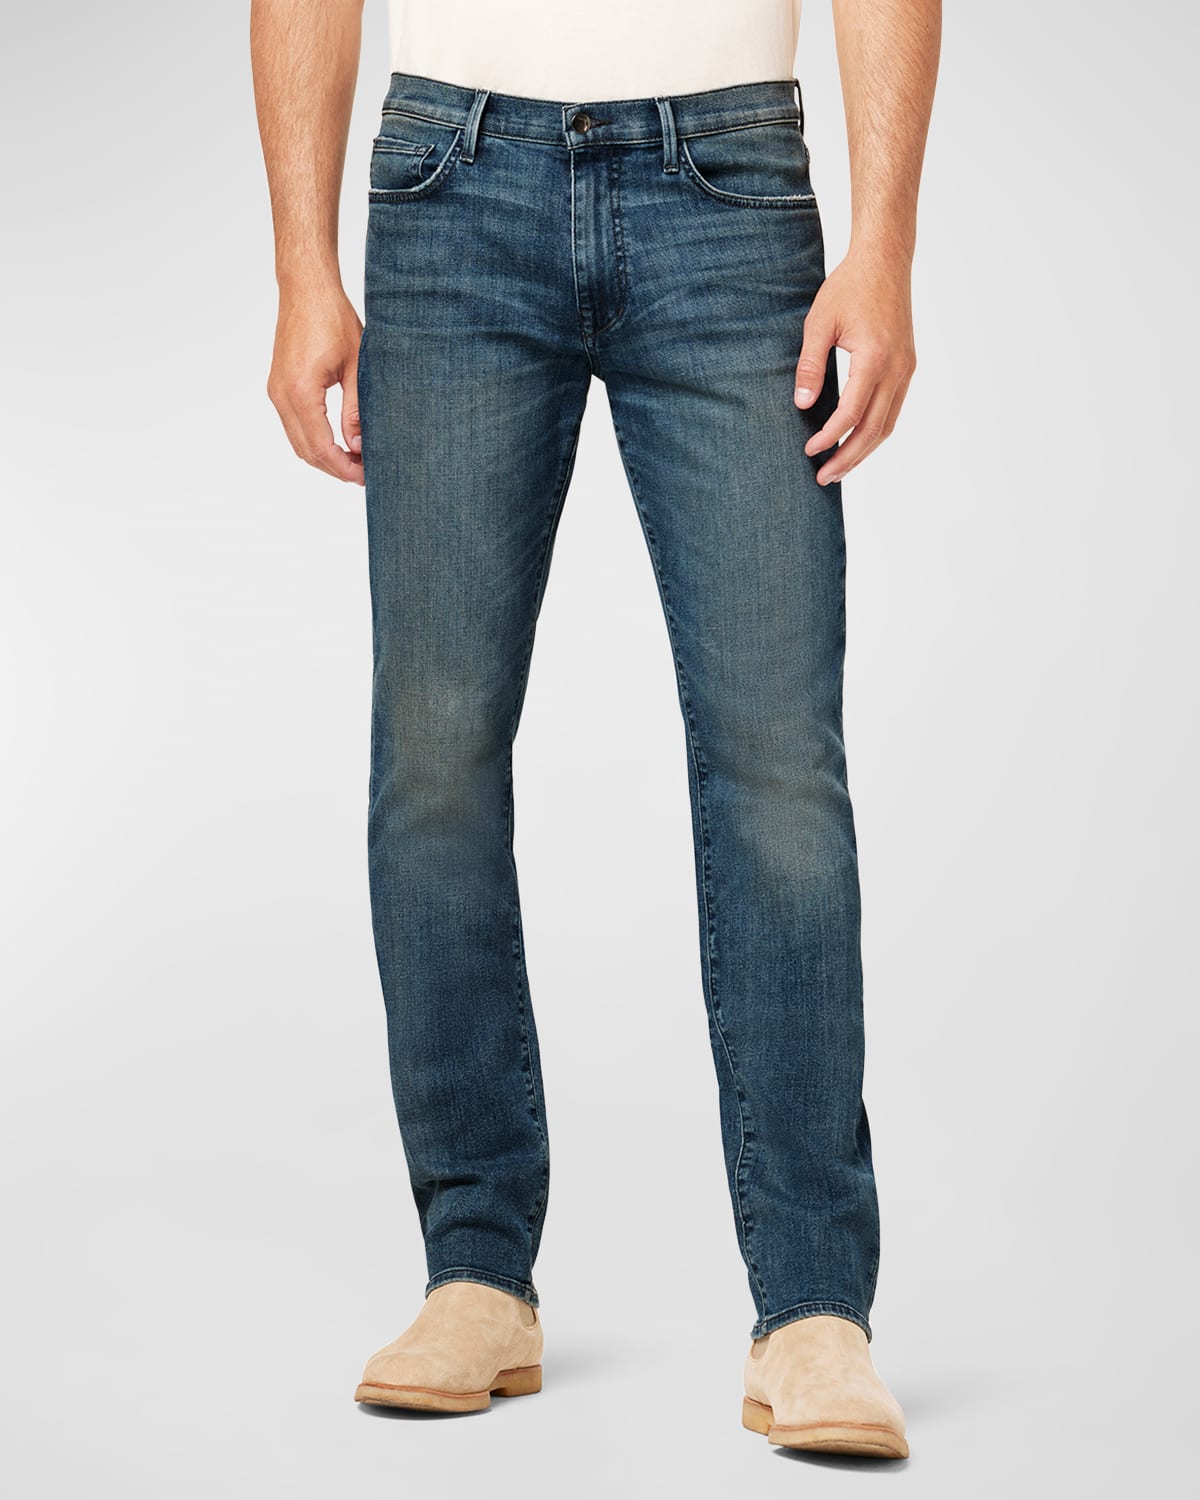 Men's Asher Slim Jeans in